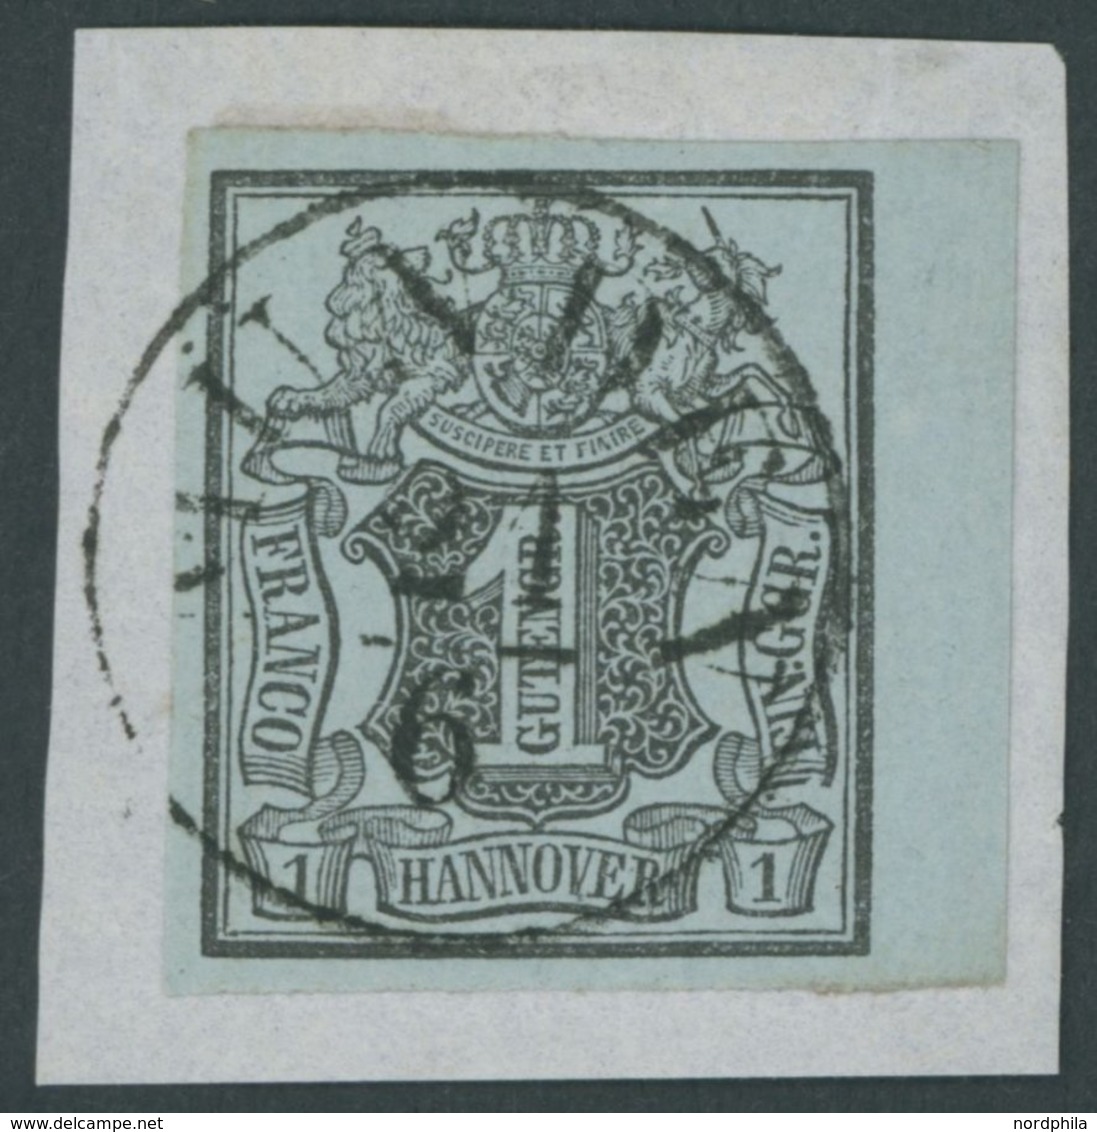 1850, 1 Ggr. Schwarz Auf Graublau, Rechtes Randstück, Zentrischer Schwarzer K1 MÜNDEN, Kabinettbriefstück -> Automatical - Hanover